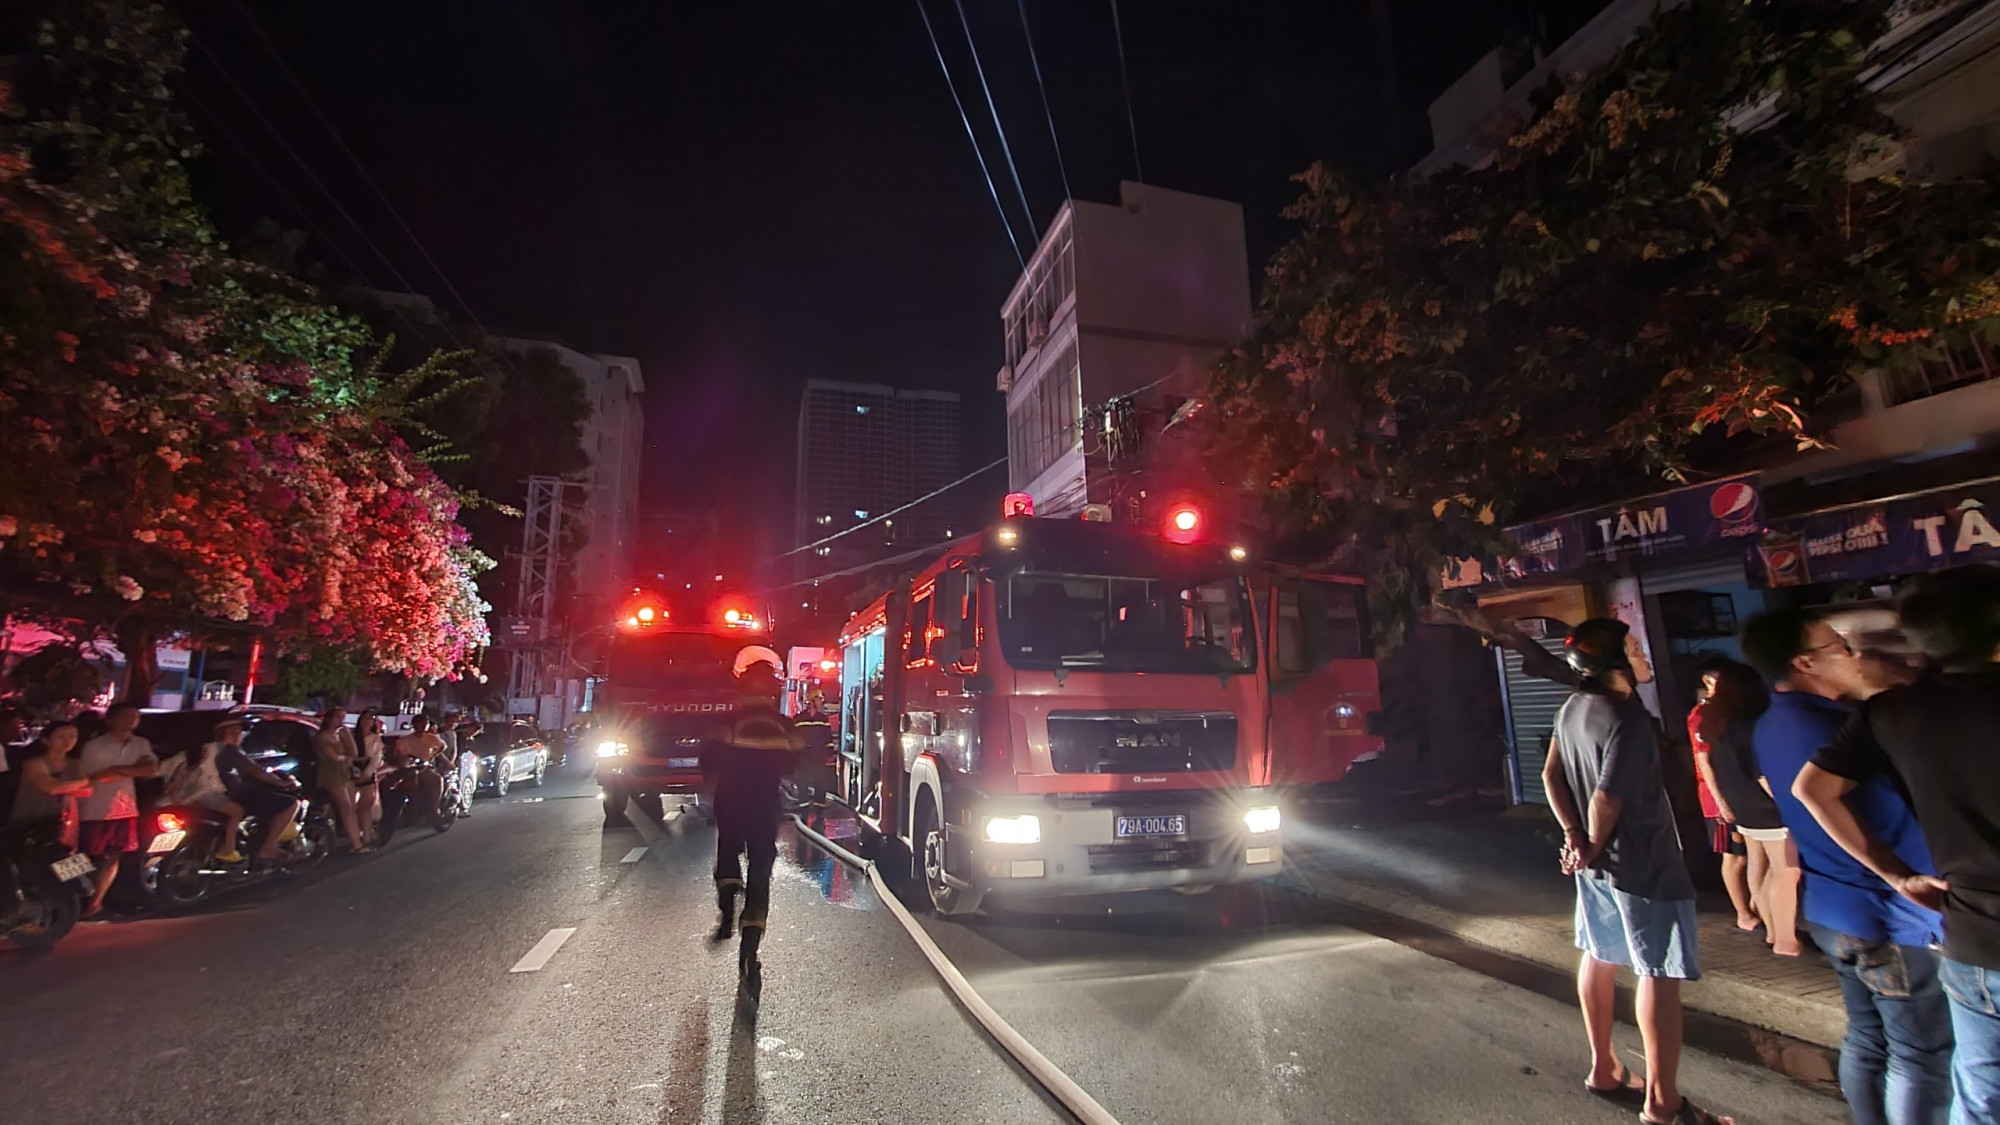 Lực lượng phòng cháy chữa cháy và cứu hộ, cứu nạn có mặt tại hiện trường để dập tắt đám cháy, cứu các nạn nhân